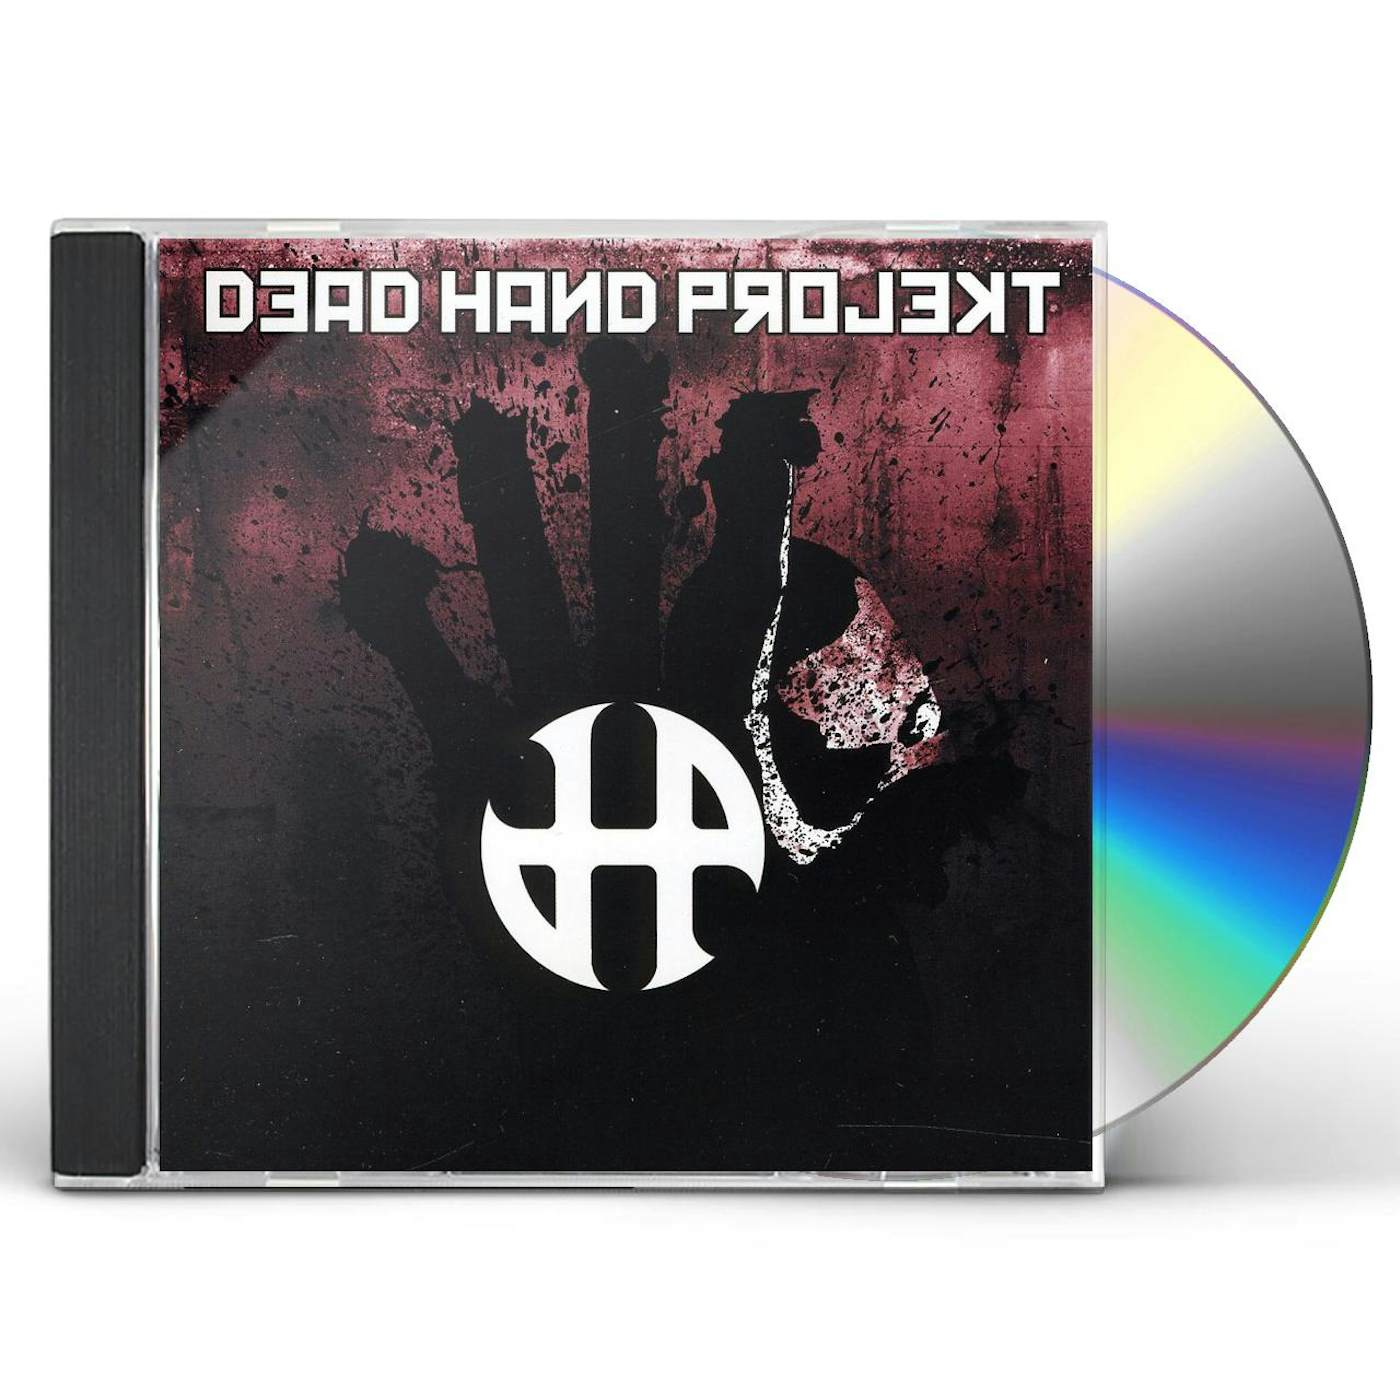 DEAD HAND PROJEKT CD